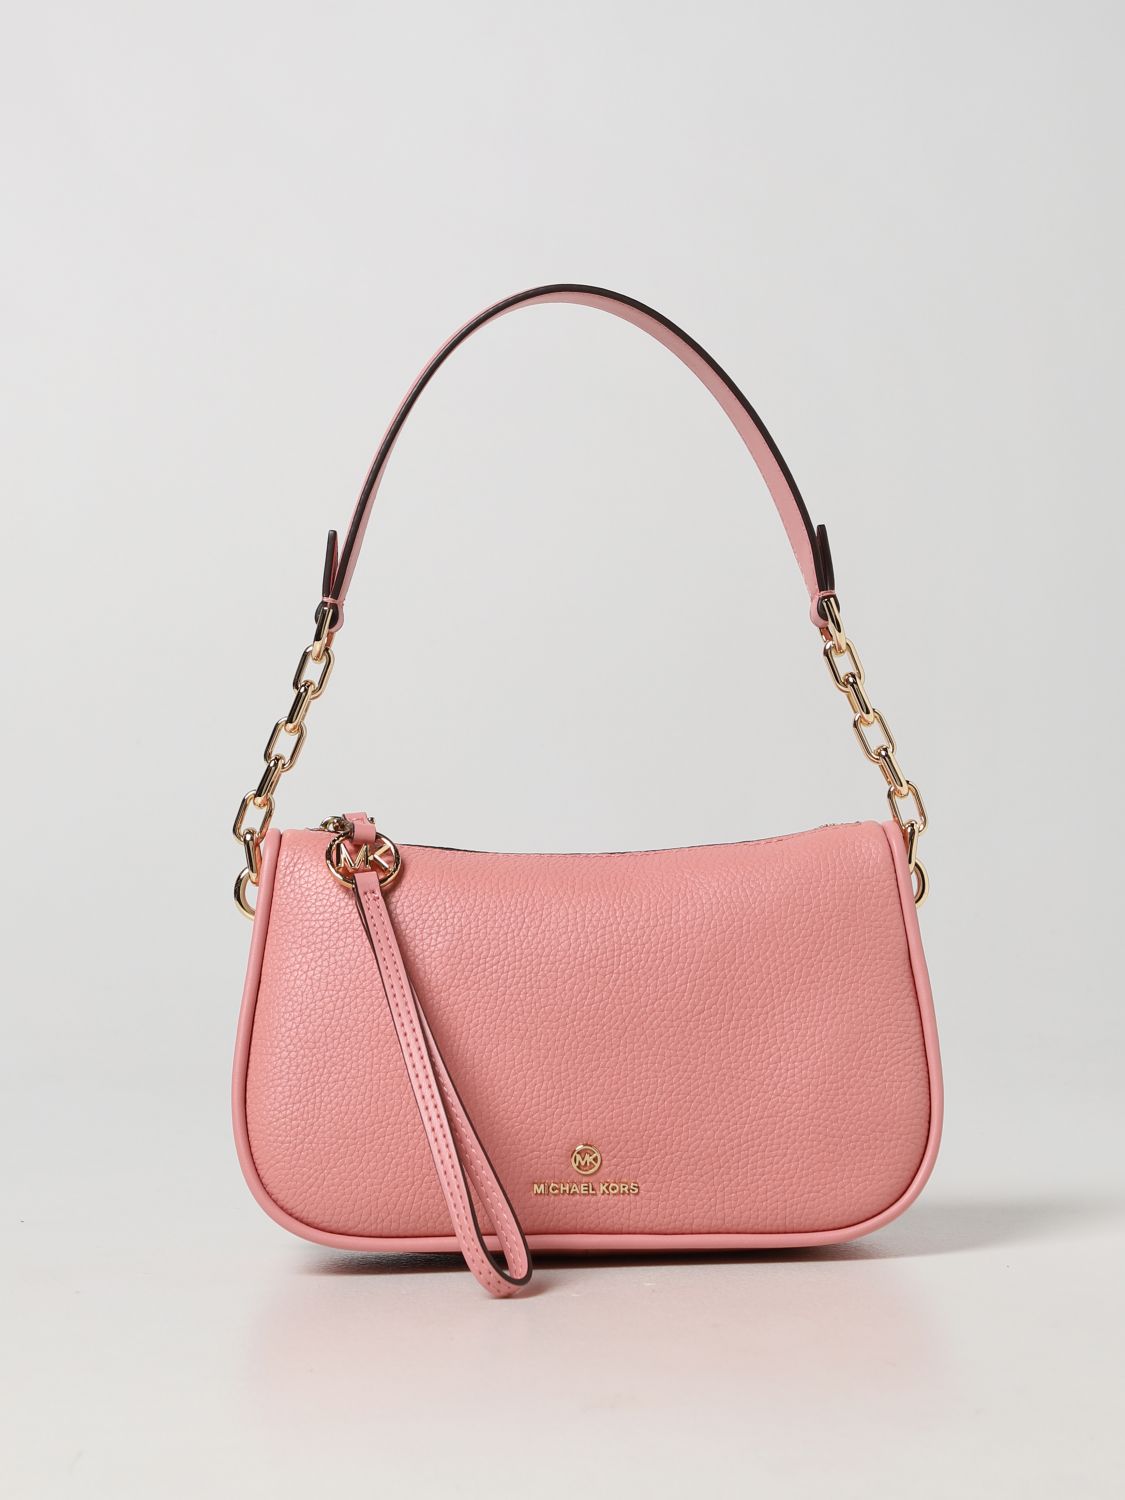 pink MICHAEL KORS Women Handbags - Vestiaire Collective